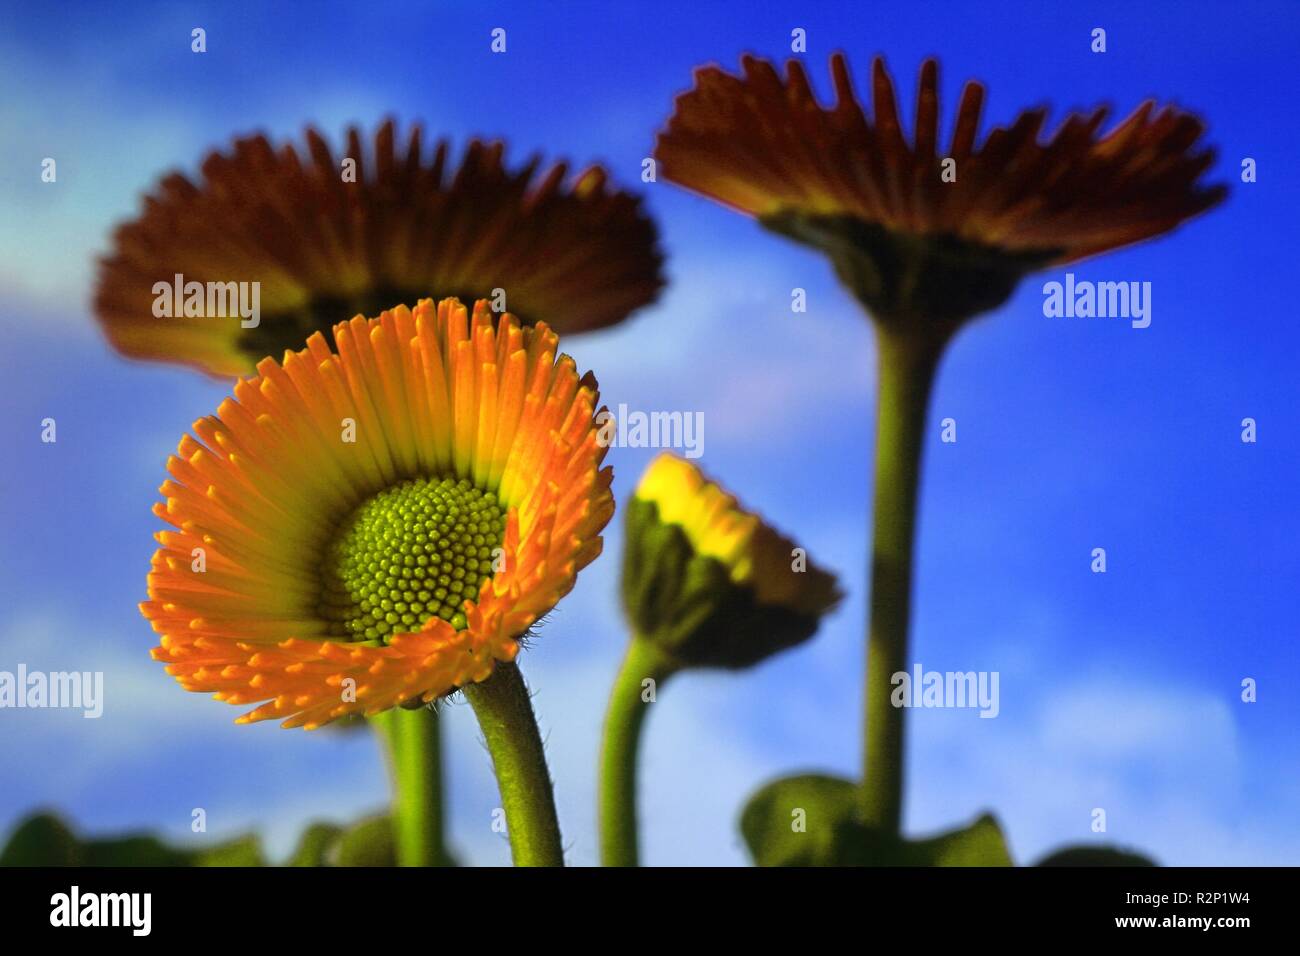 yellow daisies Stock Photo